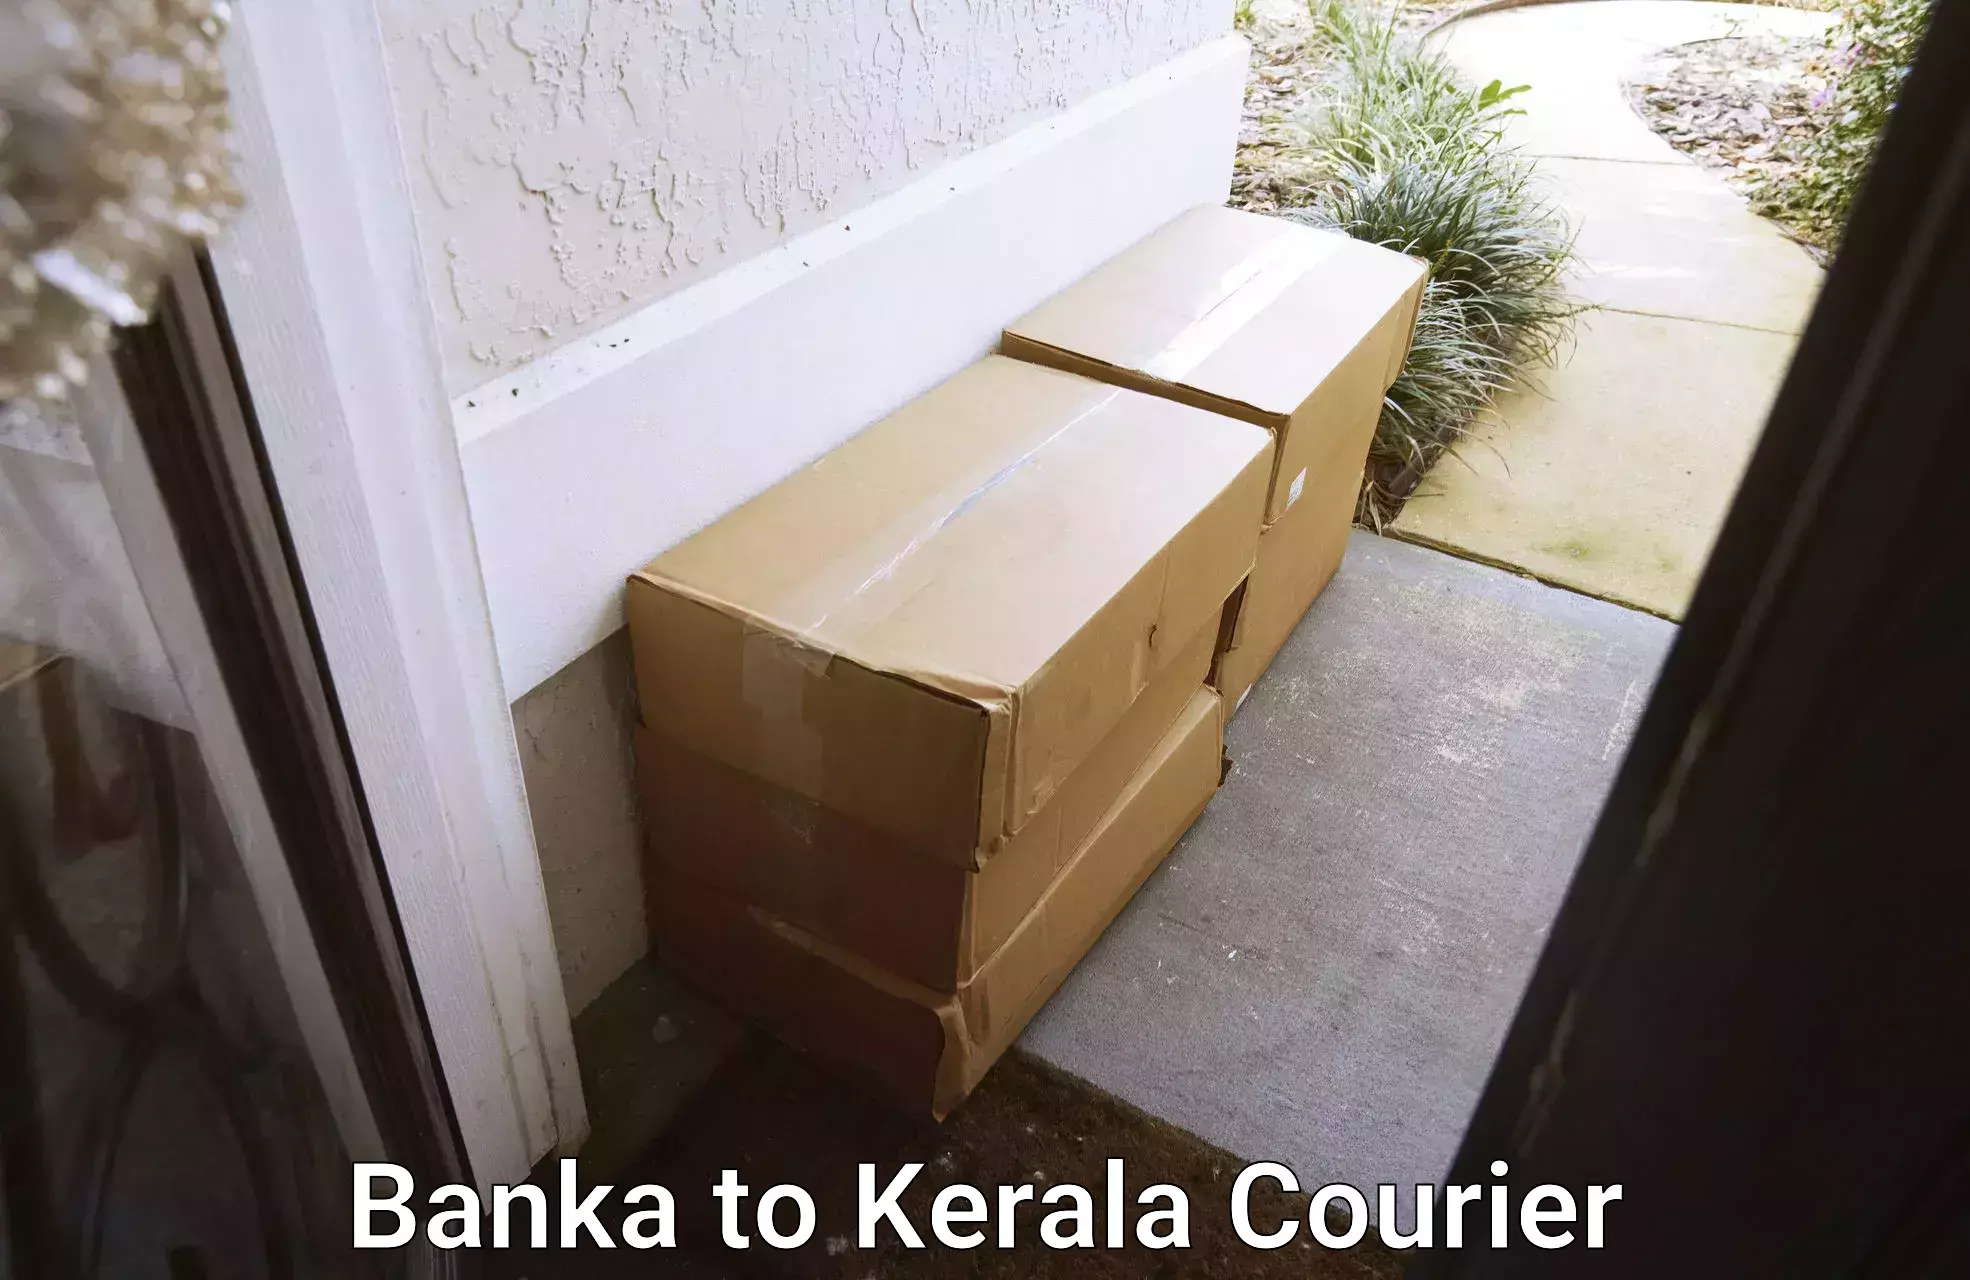 Furniture moving plans Banka to Kerala